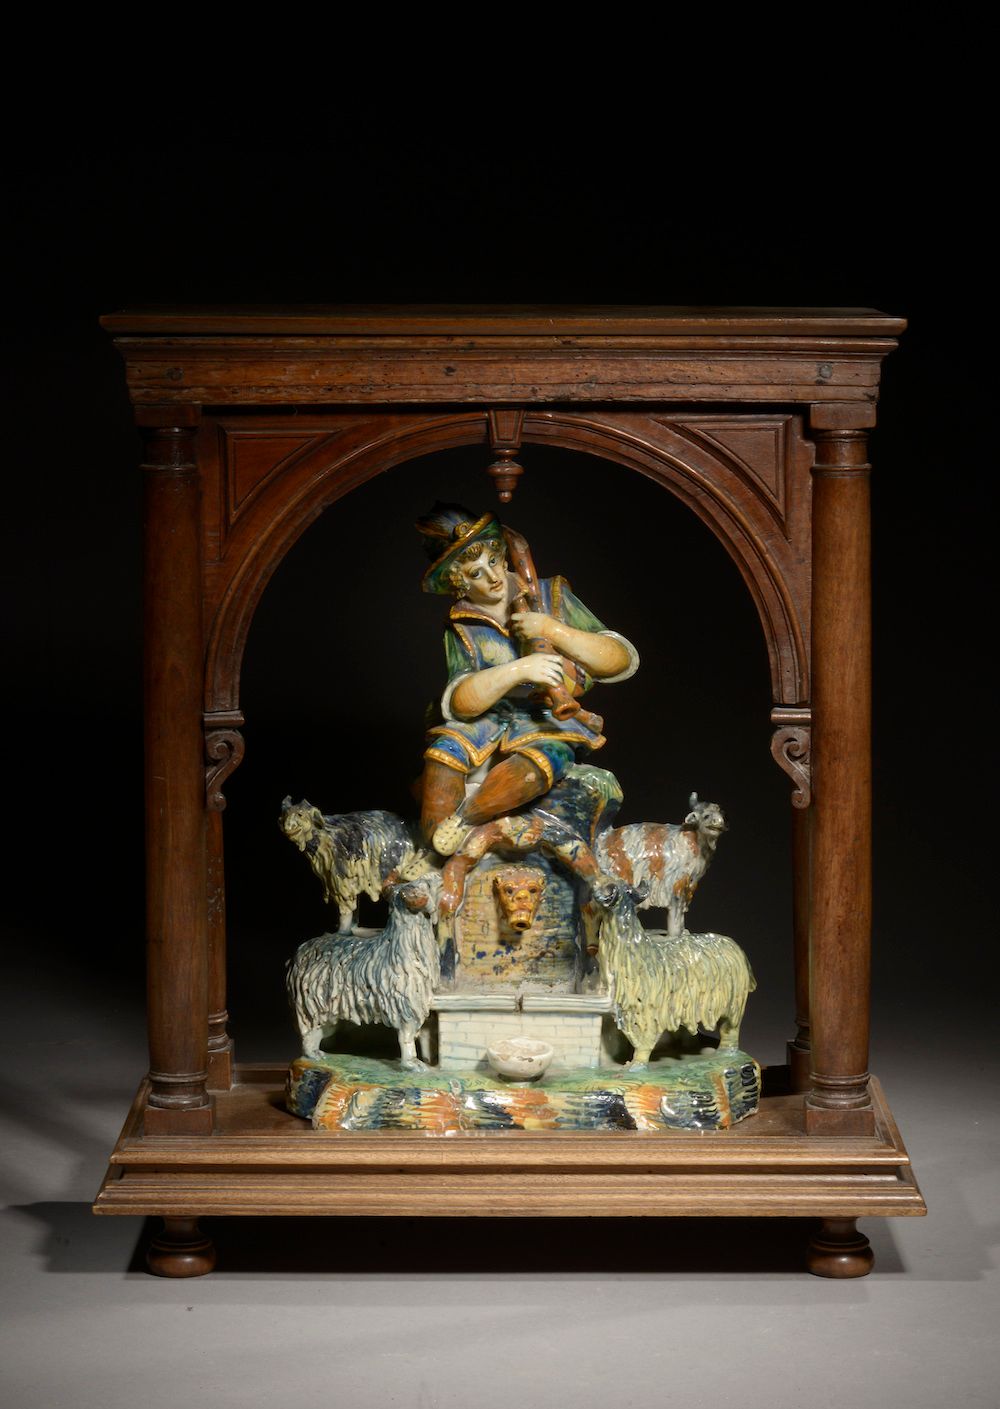 Null 小型多色珐琅彩陶器喷泉，表现一个牧羊人吹笛子，周围是他的羊群（事故和缺失）。

意大利，19世纪。

它以19世纪的锥形柱子和圆形拱门的胡桃木门廊呈现&hellip;